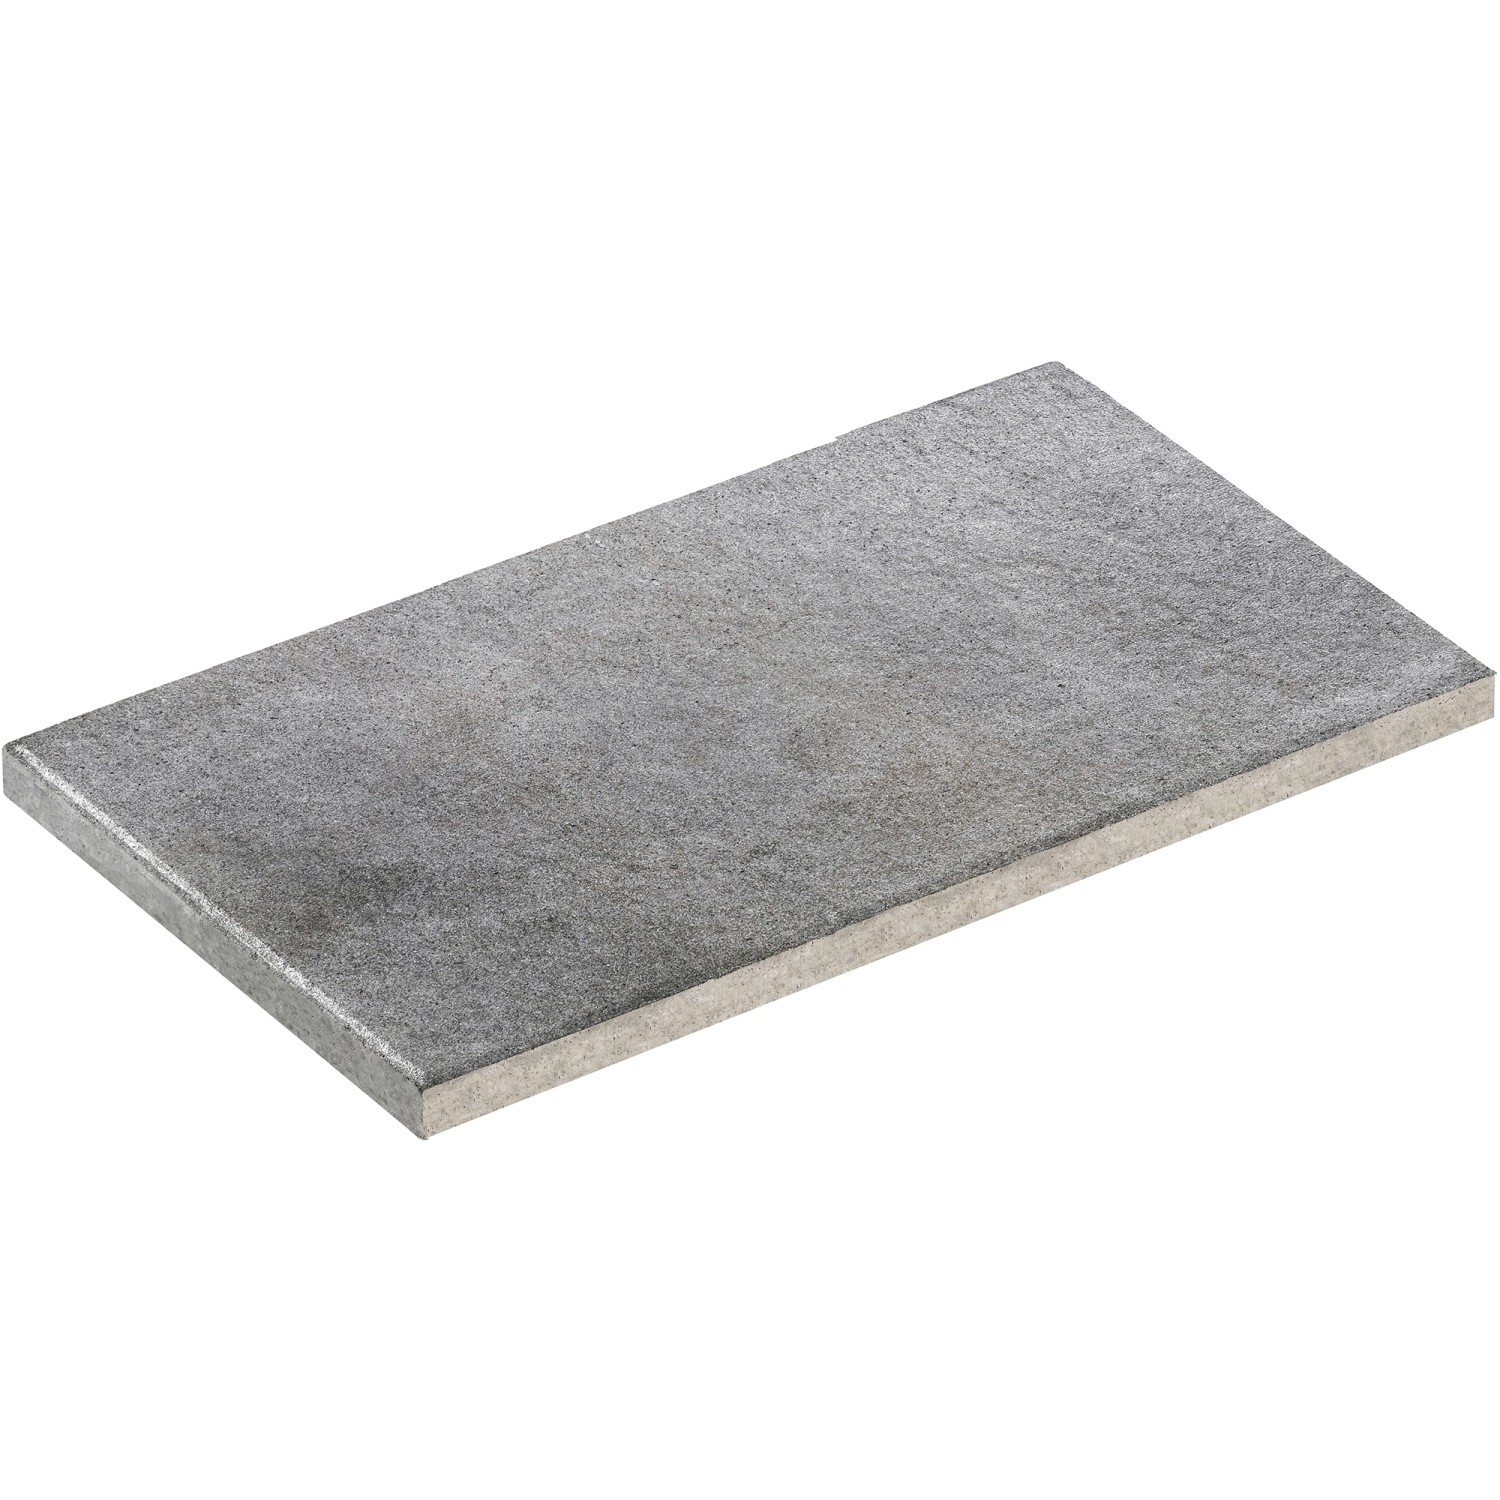 Diephaus Terrassenplatte Asante Basalt 80 cm x 40 cm x 4 cm